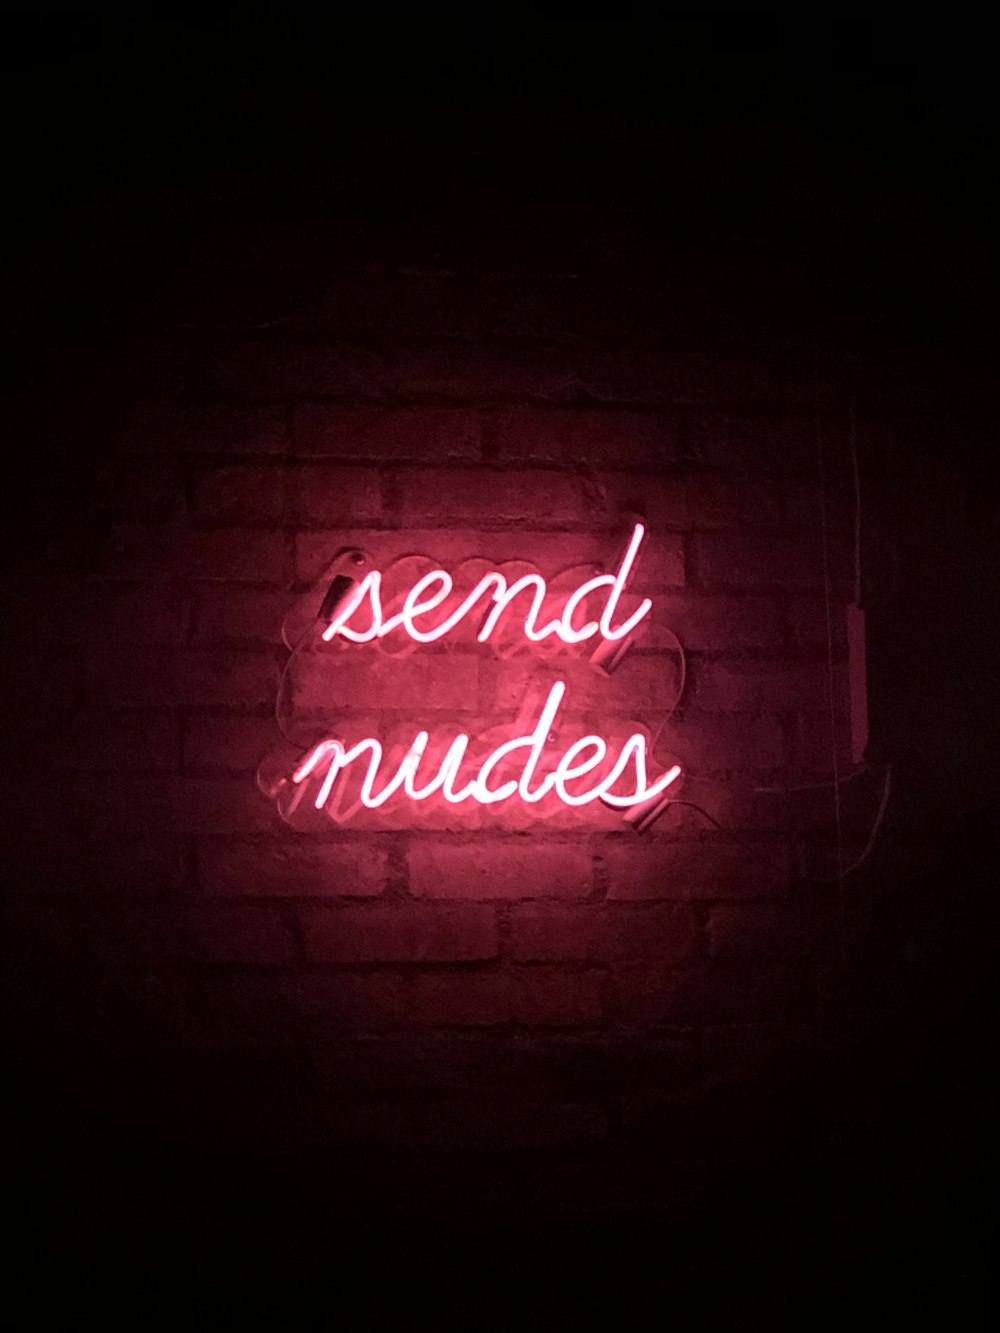 enviar sinalização nudes neon